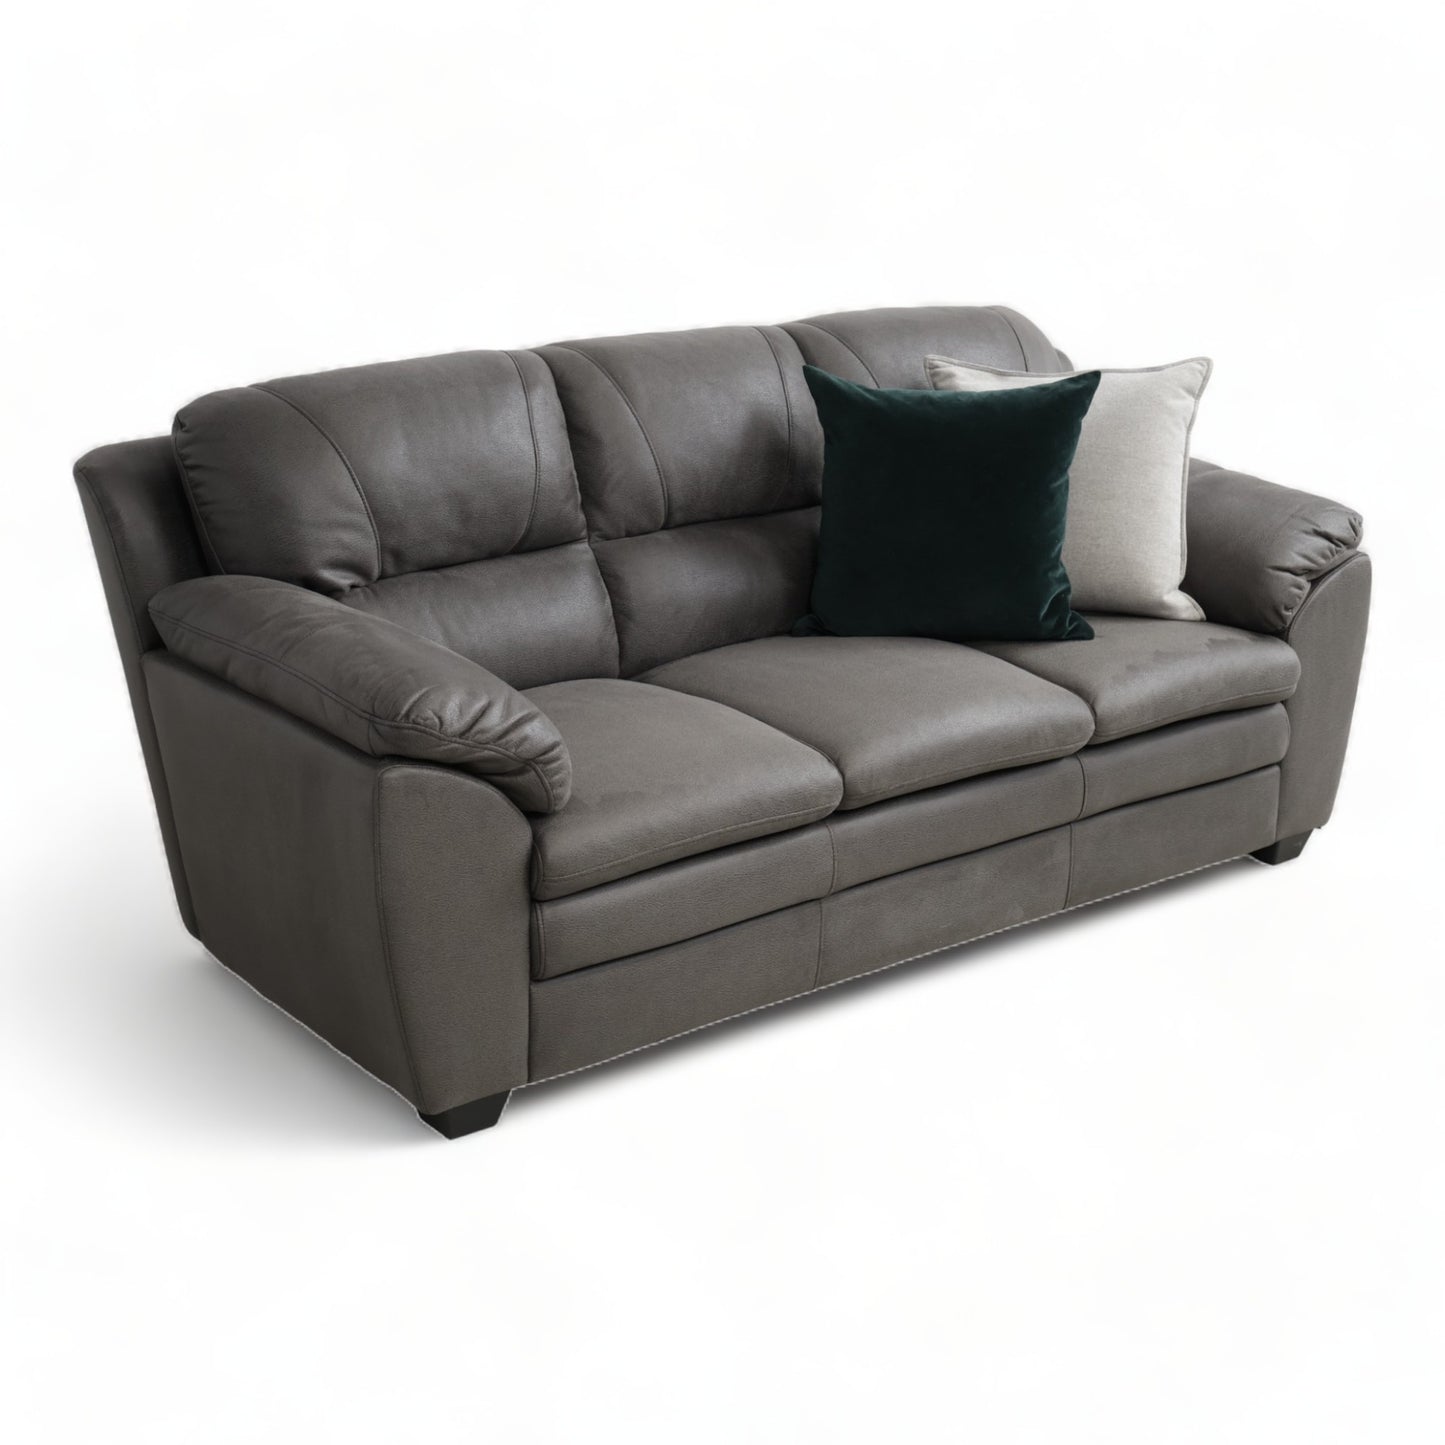 Nyrenset | Grå 3-seter sofa i imitert skinn